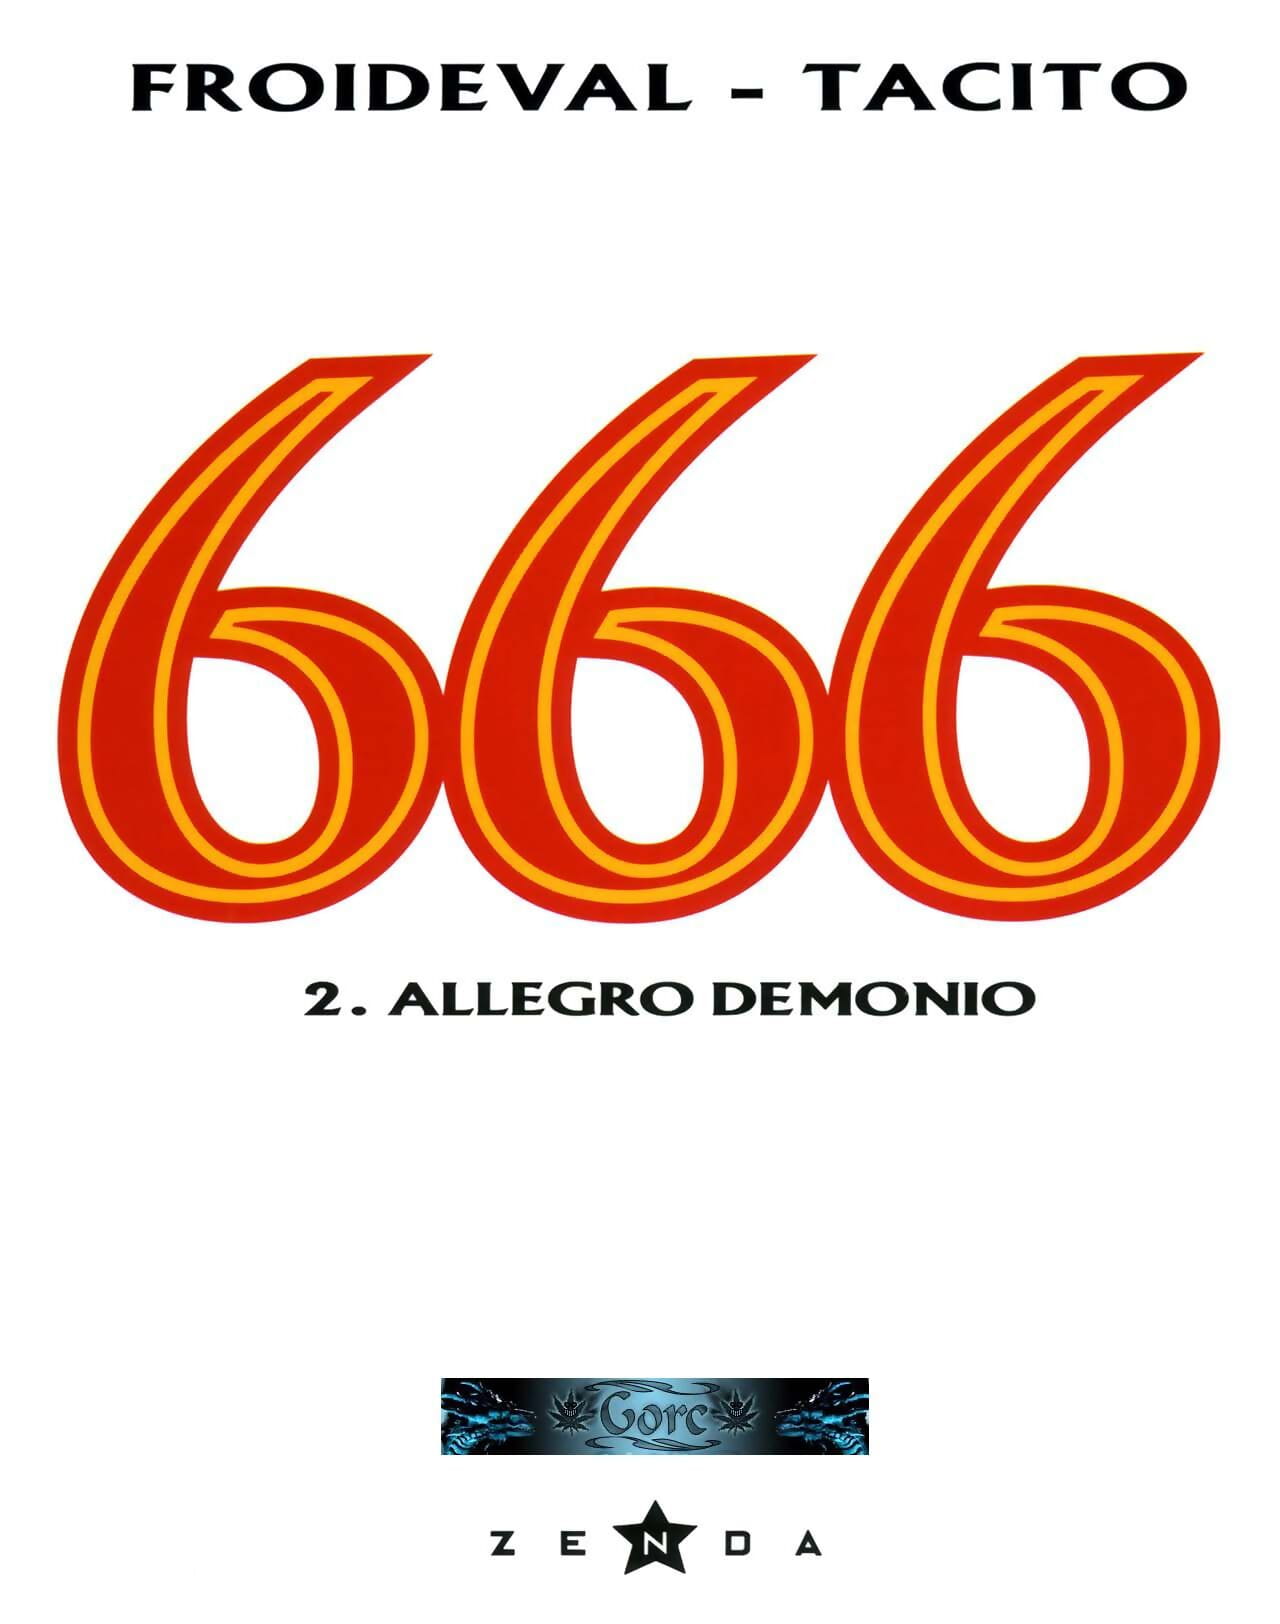 666 tomé 2 allegro demonio